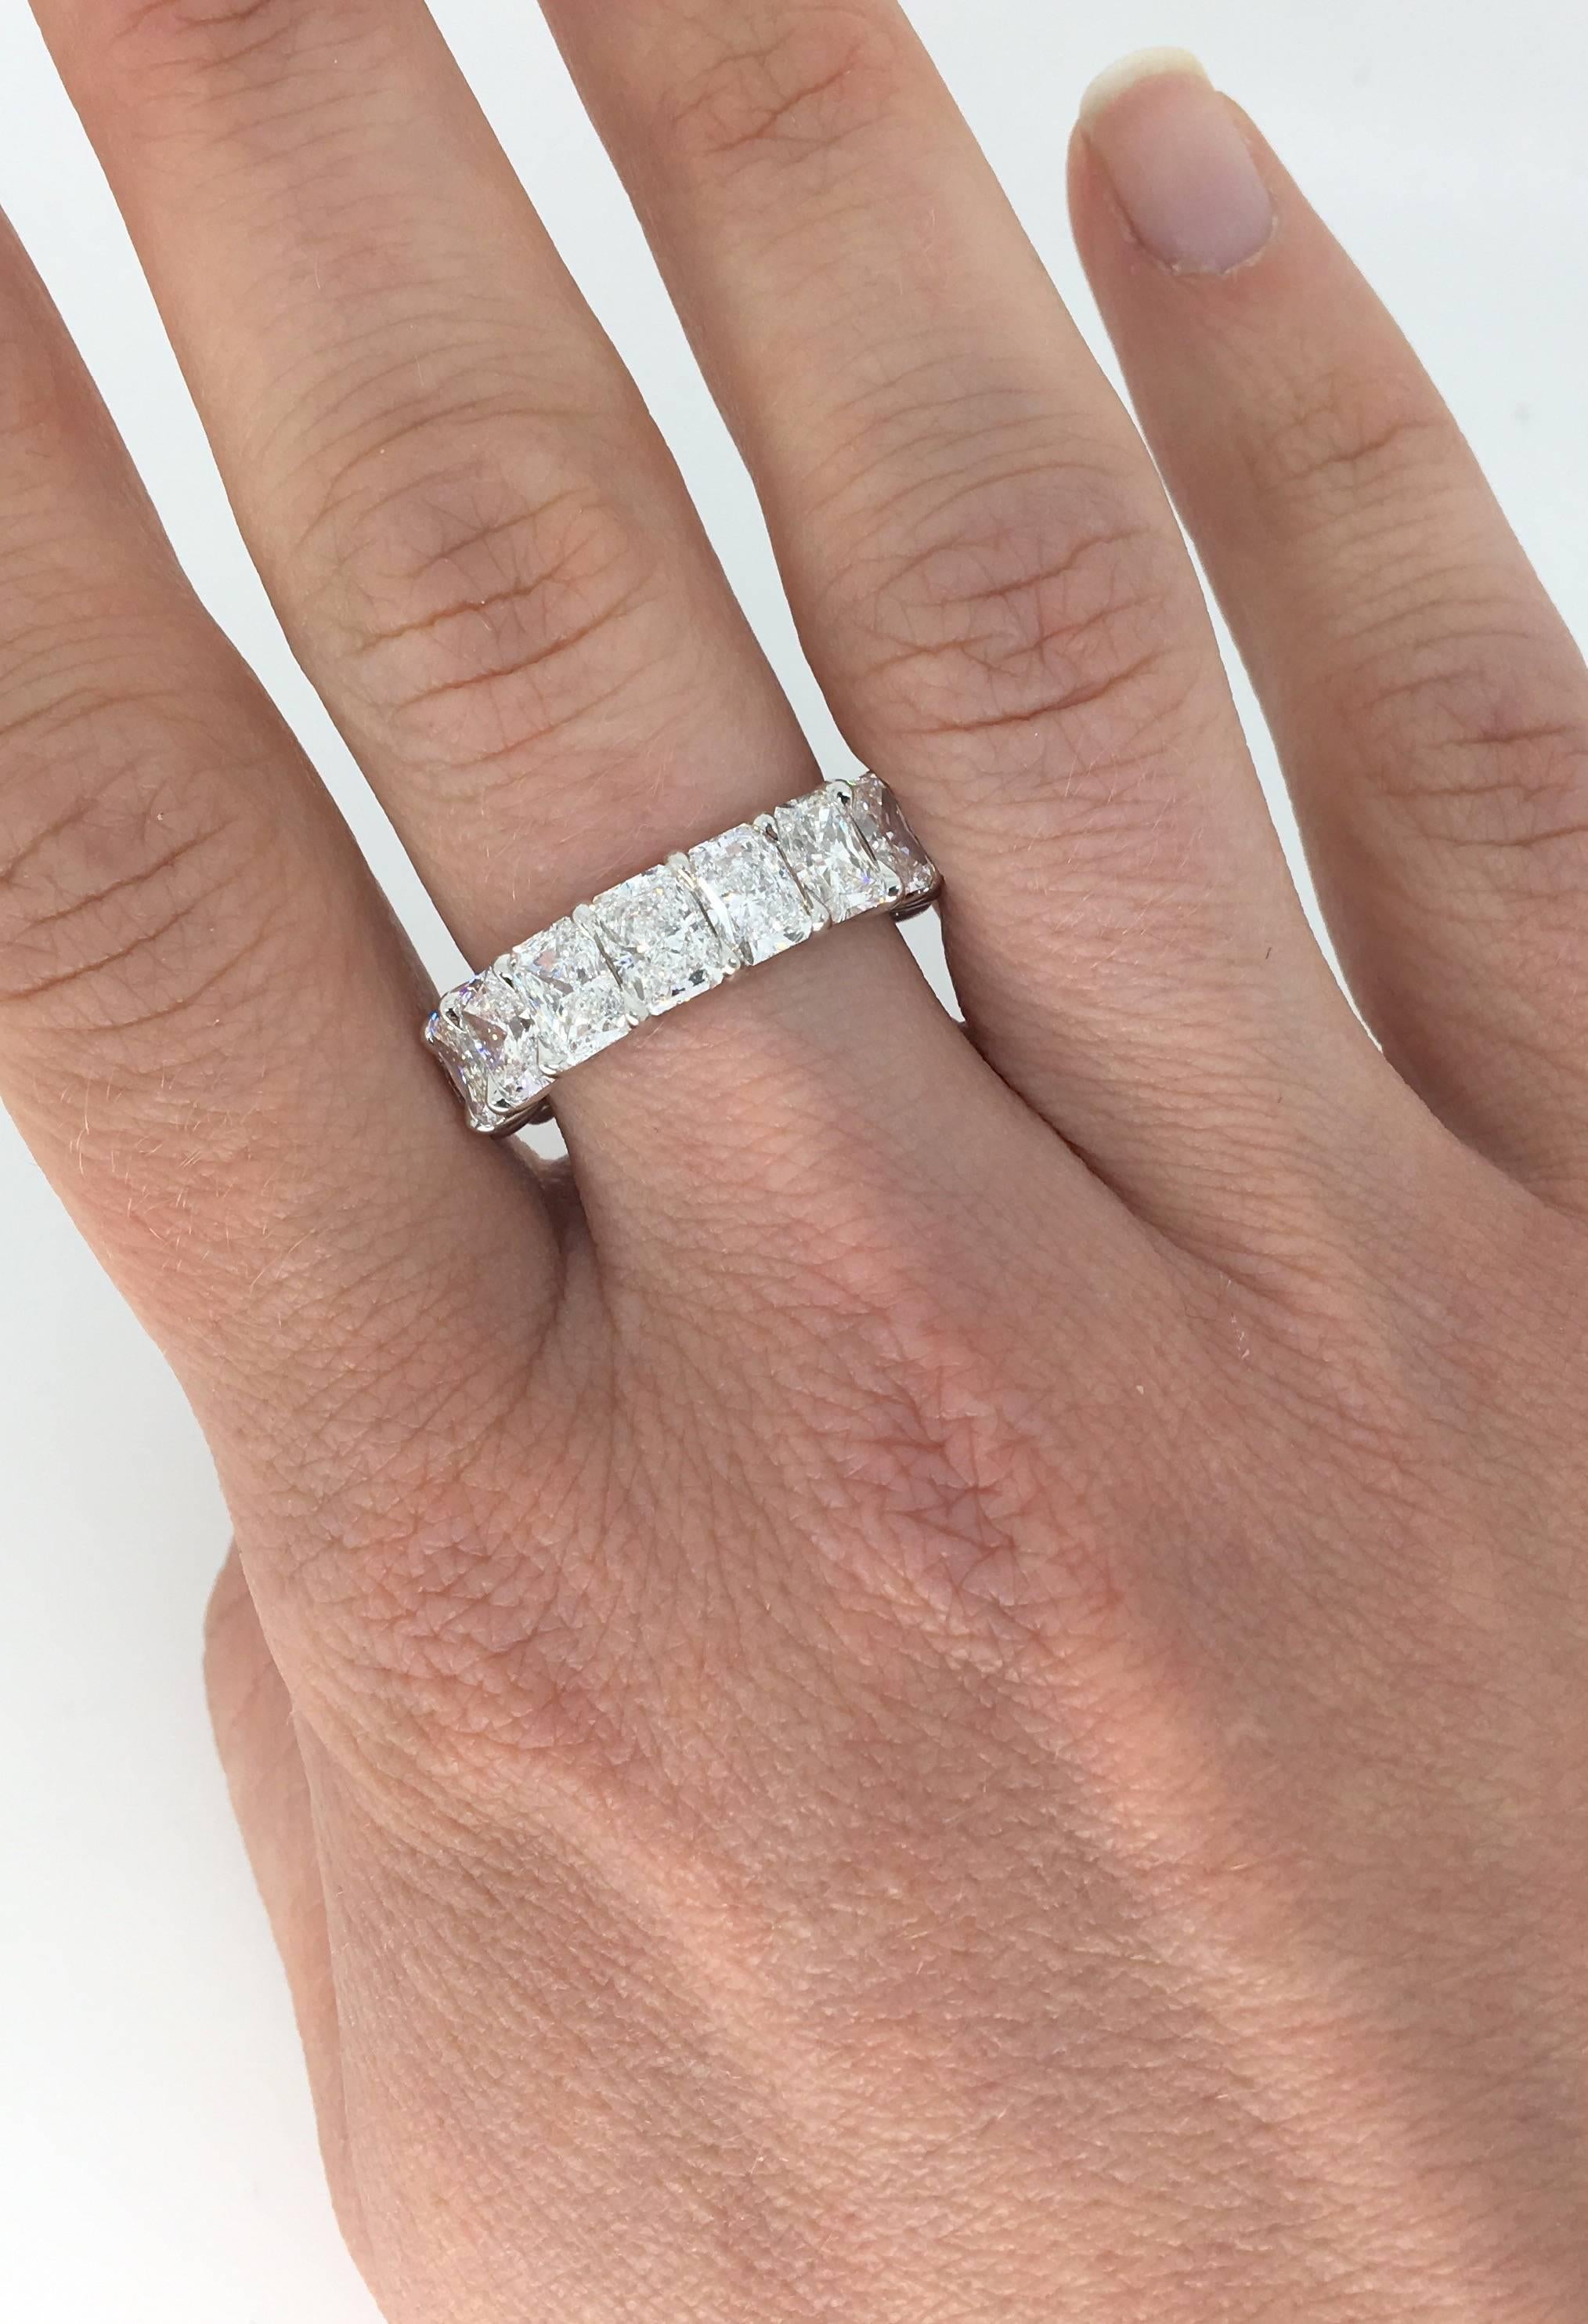 Authentique anneau éternel en diamant commandé spécialement par Harry Winston et issu de la collection Rock Band Ring. La bague comporte 17 diamants taille Radiant, tous de couleur D-F et de pureté VS1-2, pour un total d'environ 9,35ctw. Tous les